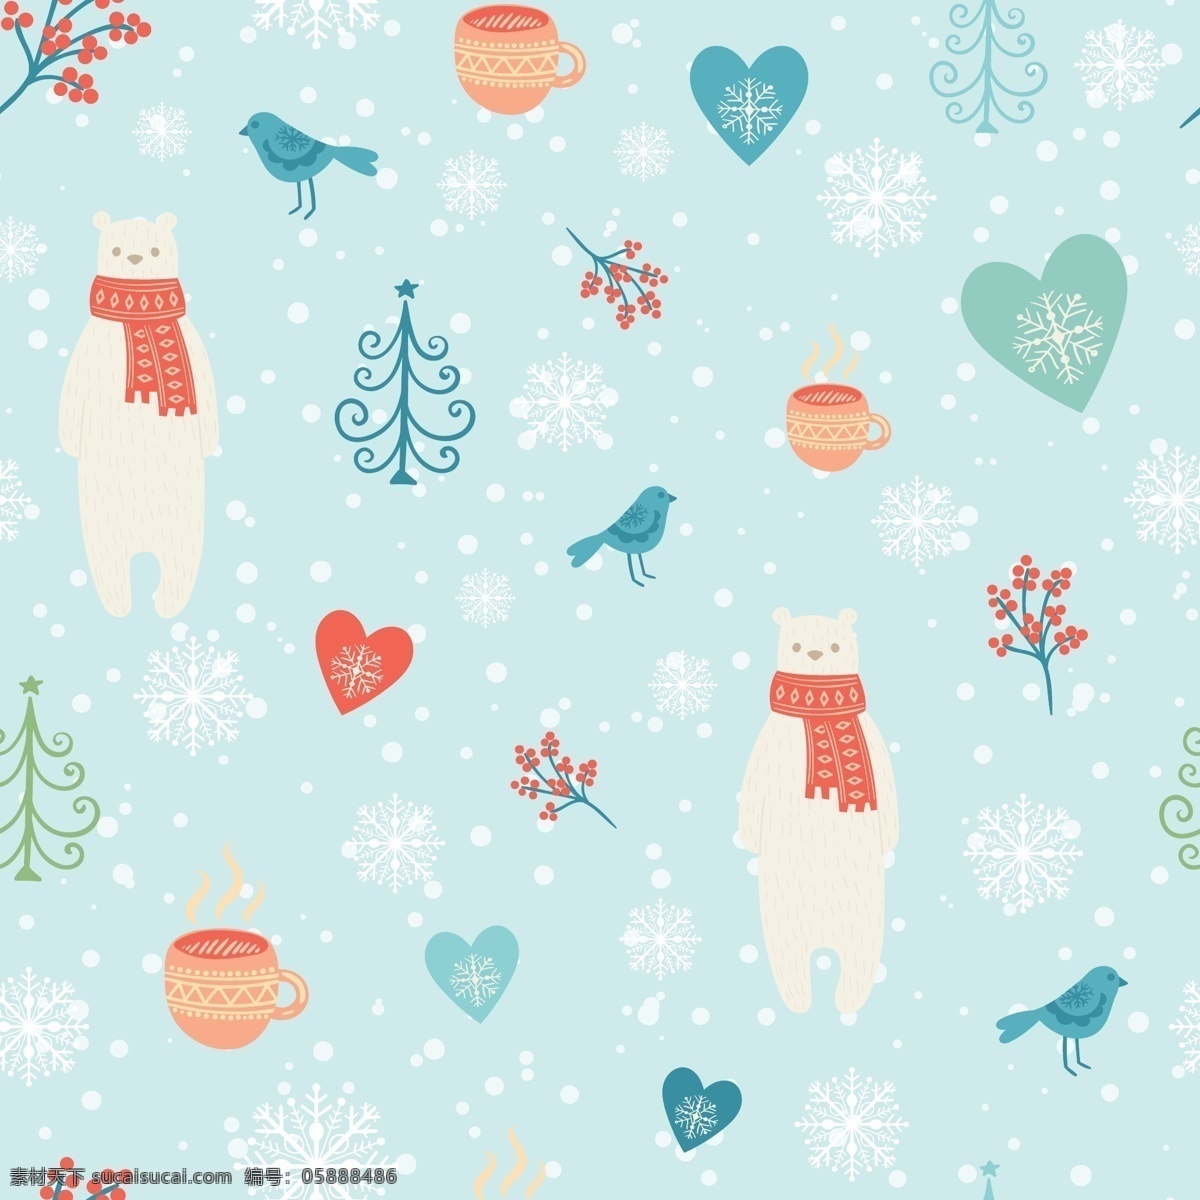 蓝色 圣诞 卡通 矢量 合集 环保 可爱 矢量素材 北极熊 排列 简约 平面素材